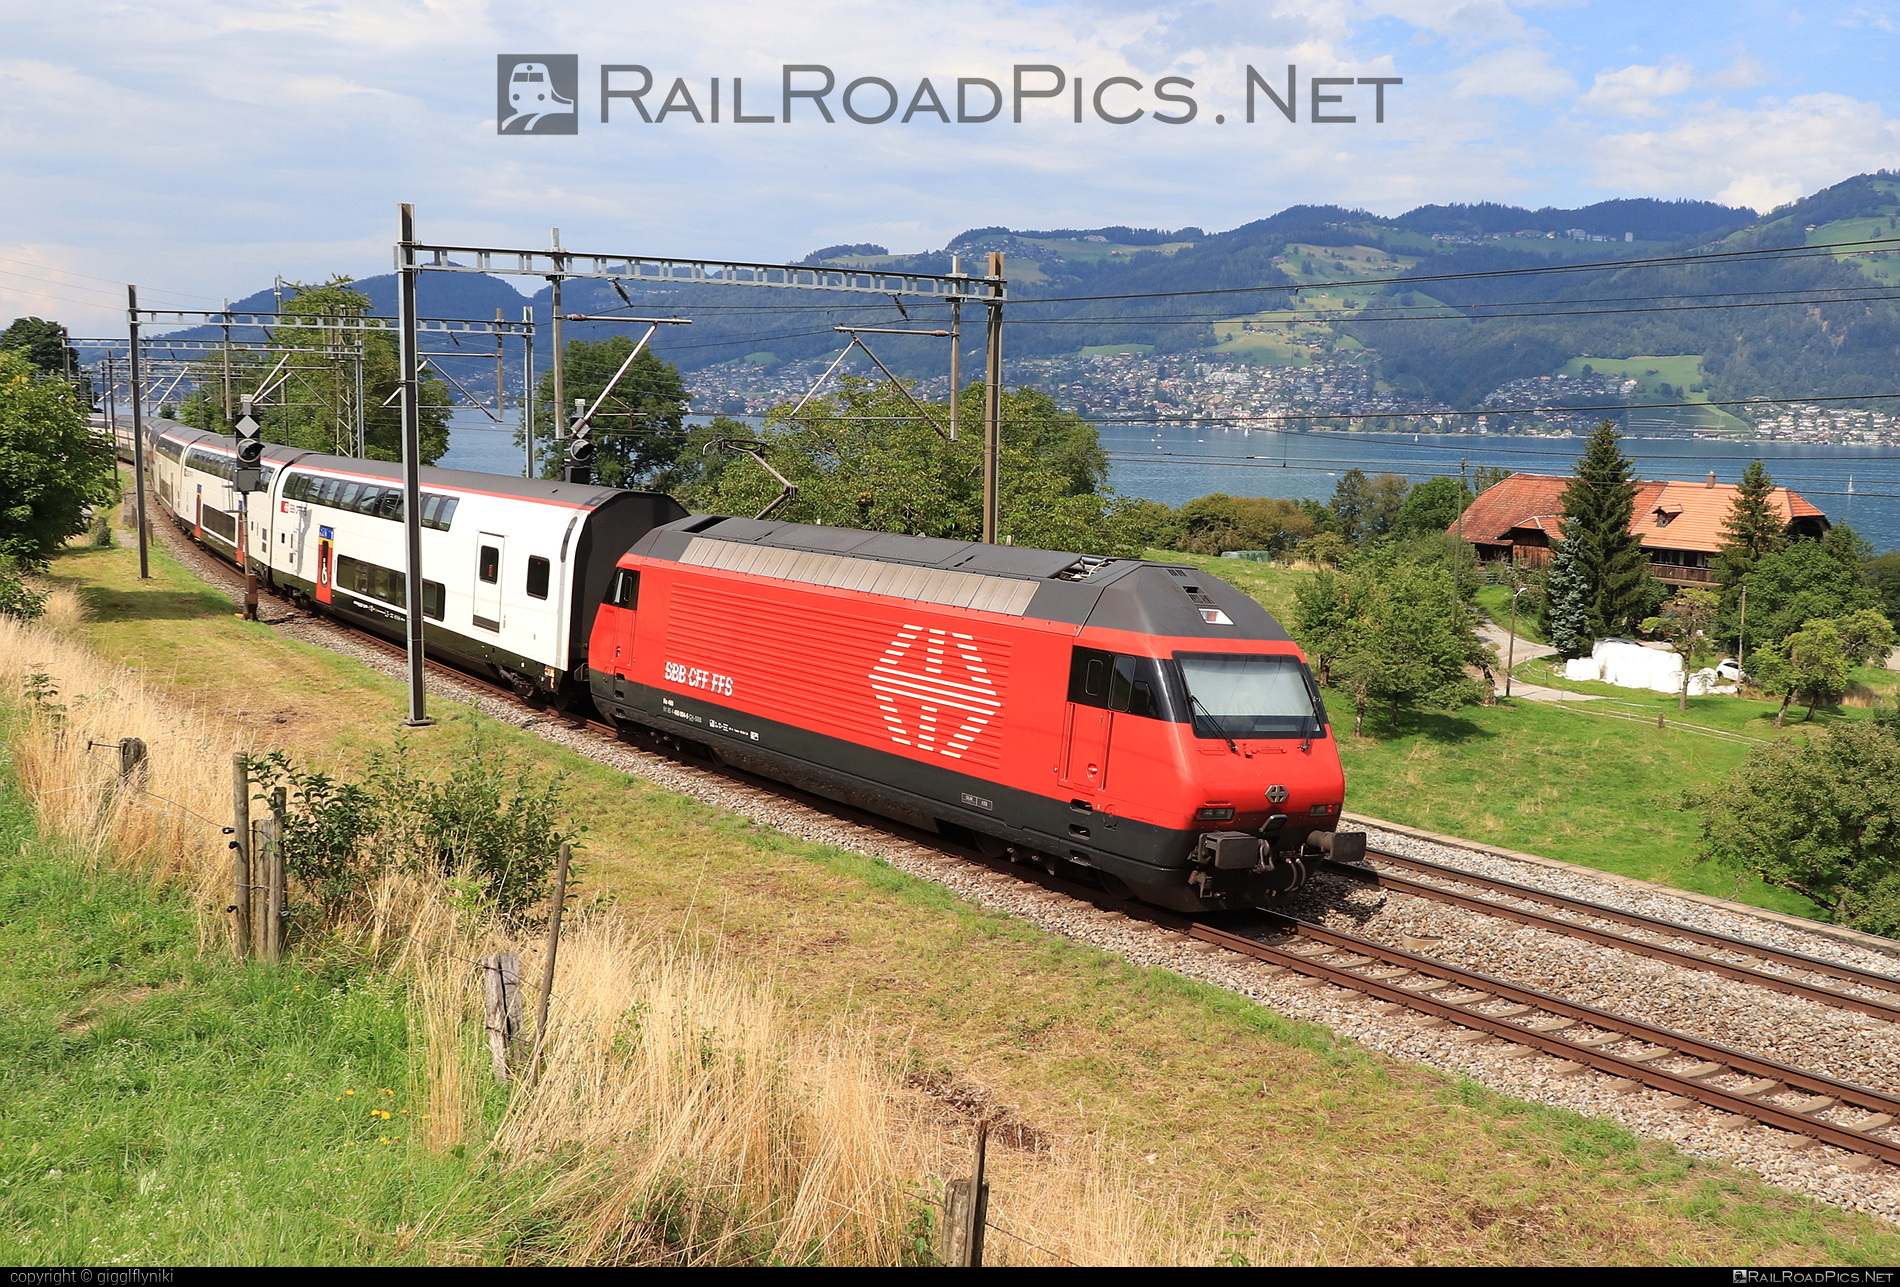 SBB Class Re 460 - 460 004 operated by Schweizerische Bundesbahnen SBB #CFF #CheminsDeFerFederauxSuisses #FFS #FerrovieFederaliSvizzere #SBB #SchweizerischeBundesbahnen #lok2000 #sbbClassRe460 #sbbRe460